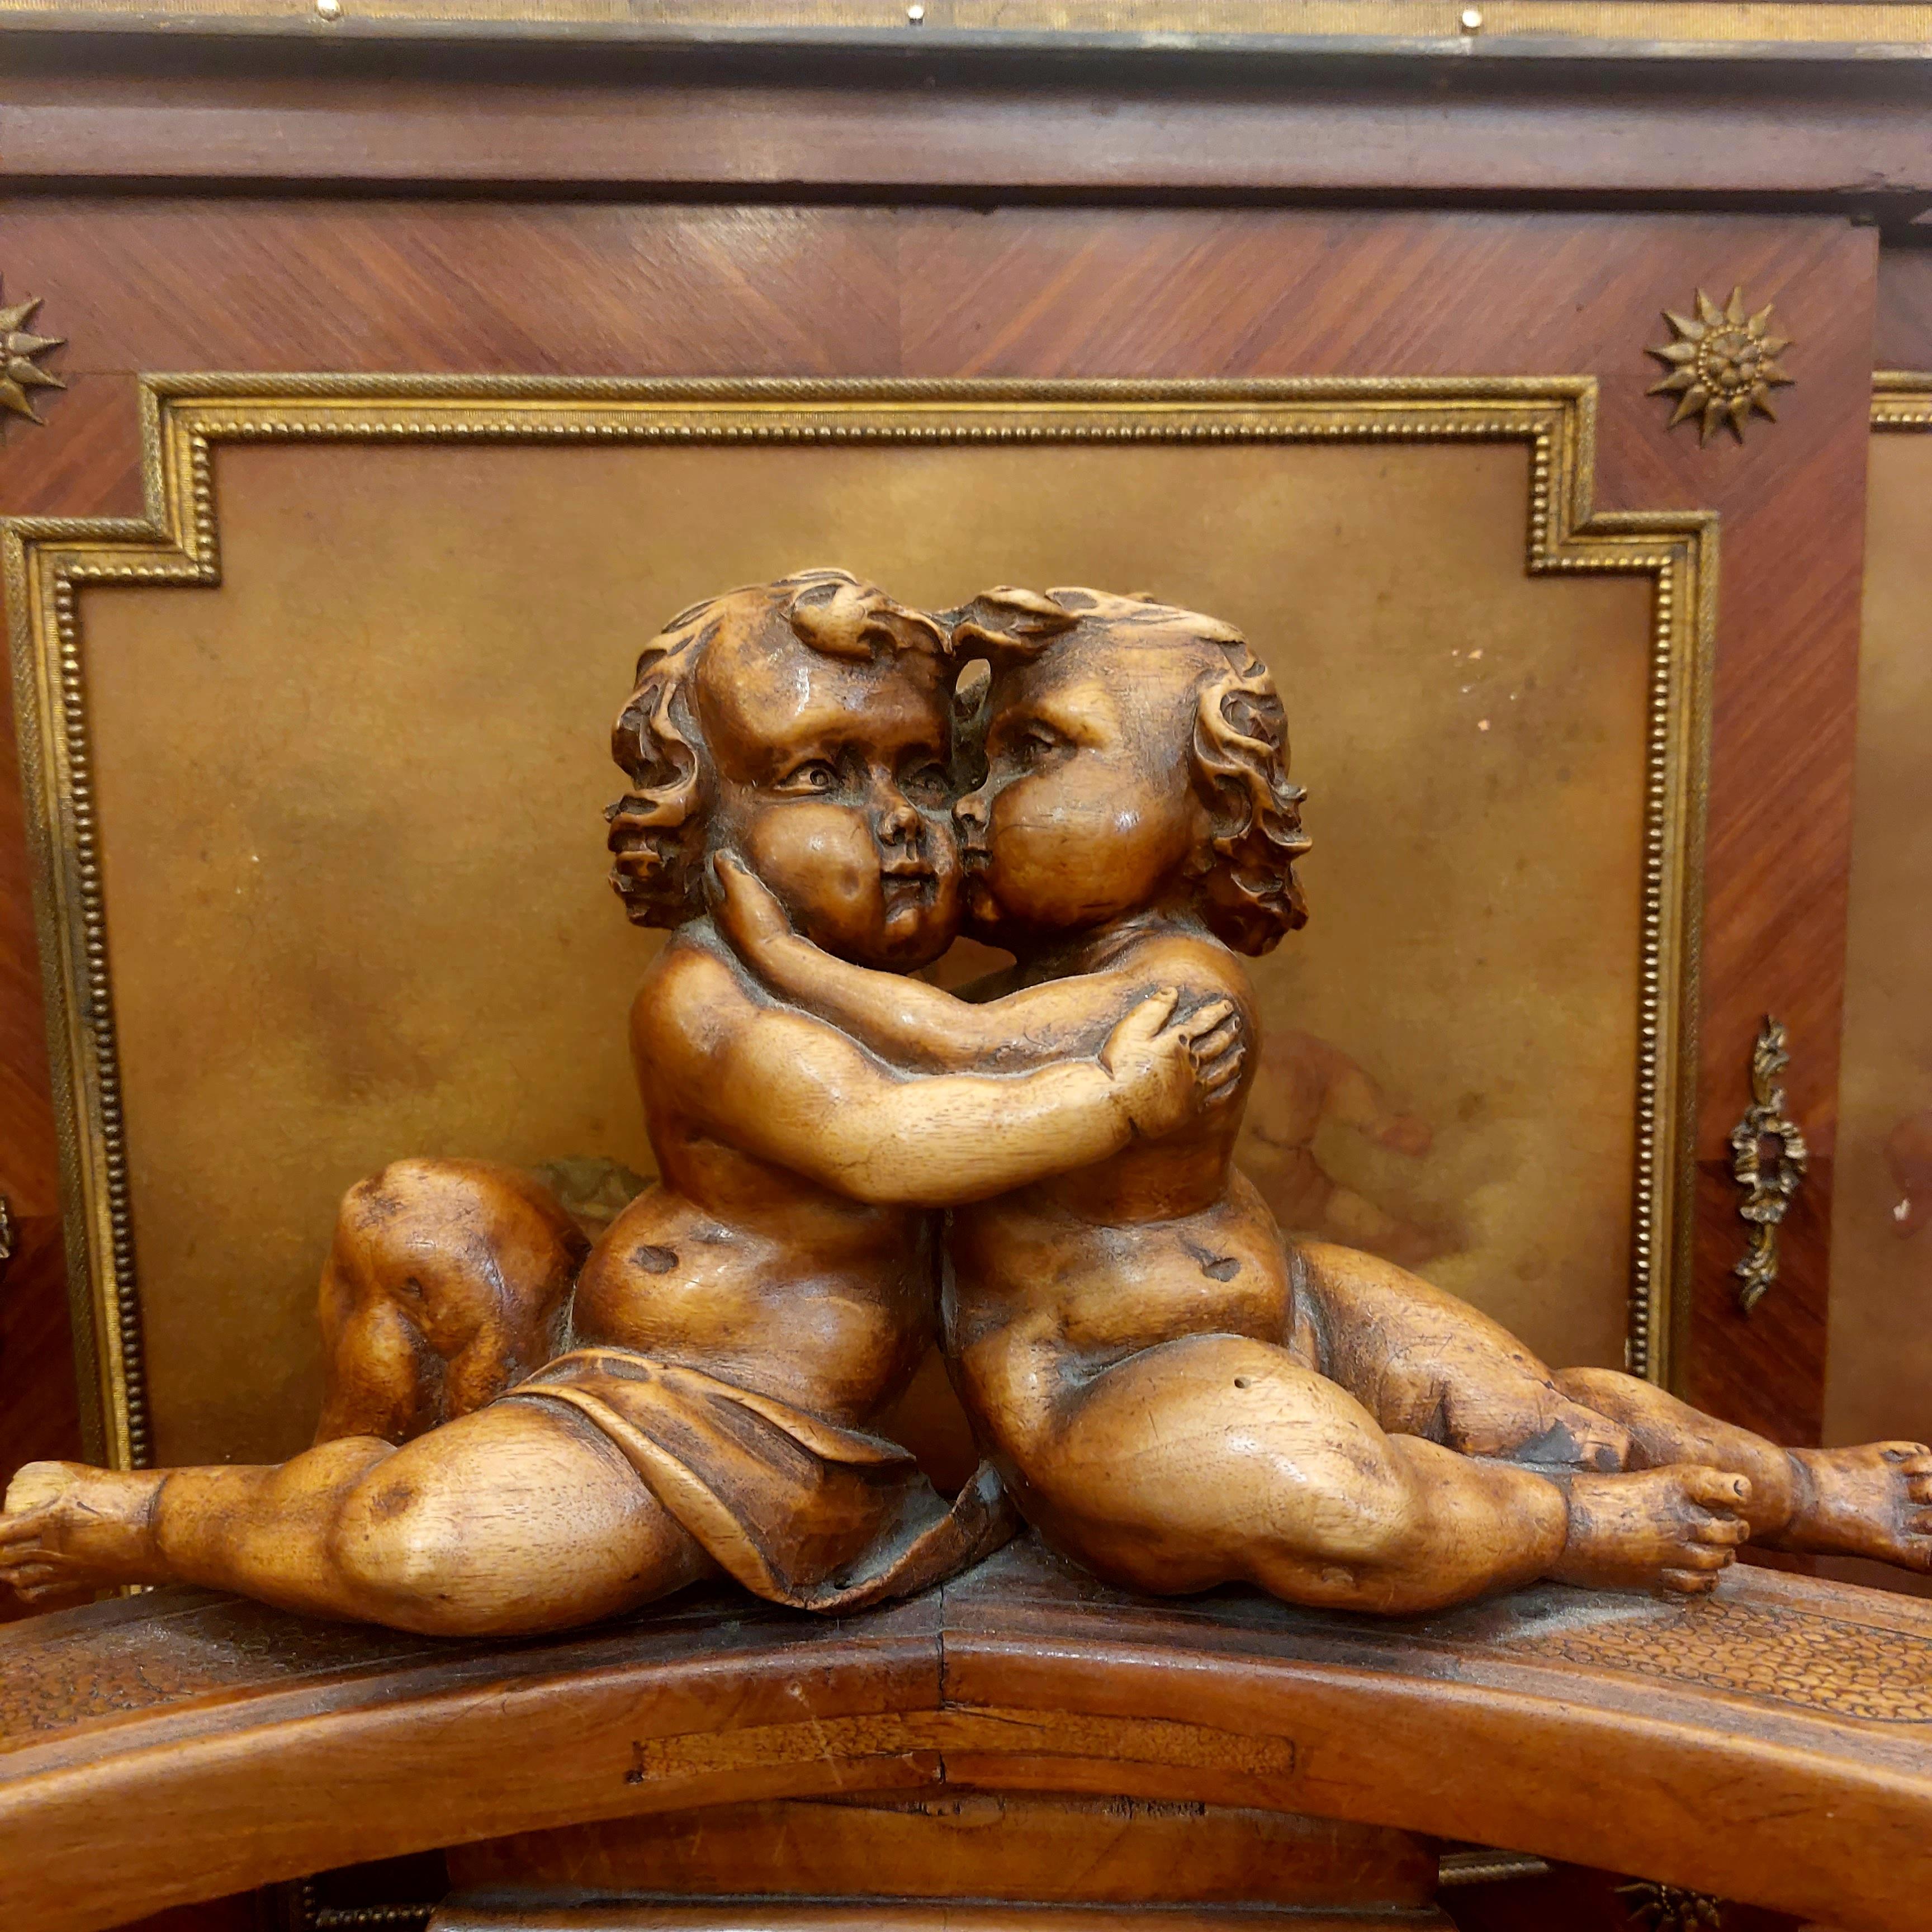 Élégant fauteuil italien en noyer richement sculpté surmonté de deux Putti enlacés et dont l'assise à été restaurée. Il est de style Louis XIII néo-Renaissance.

Très décoratif, très original et très riche de par l'impressionant de travail de